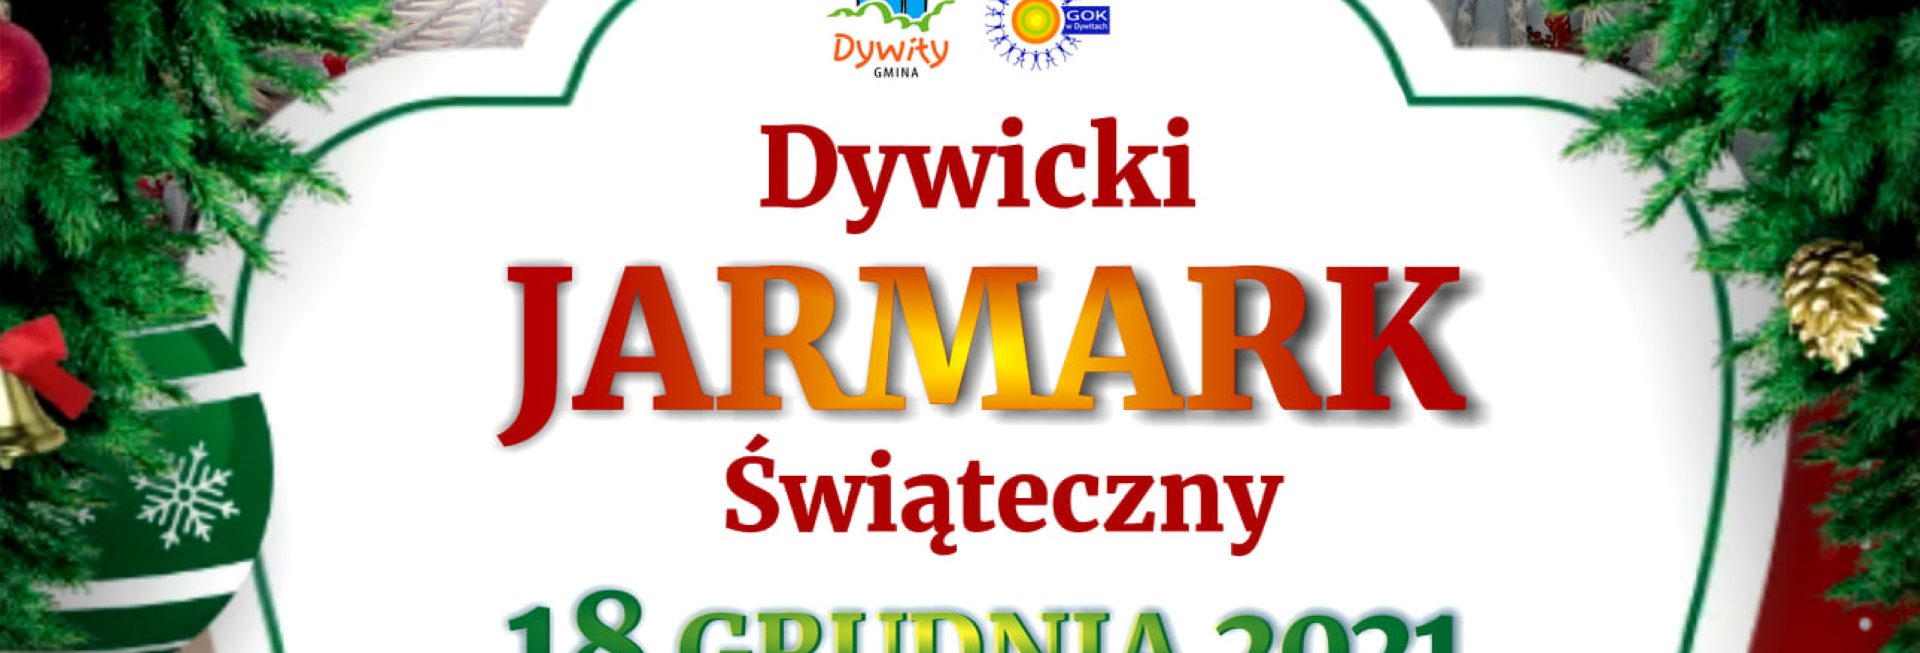 Plakat graficzny zapraszający do Dywit na Dywicki Jarmark Świąteczny - Dywity 2021.